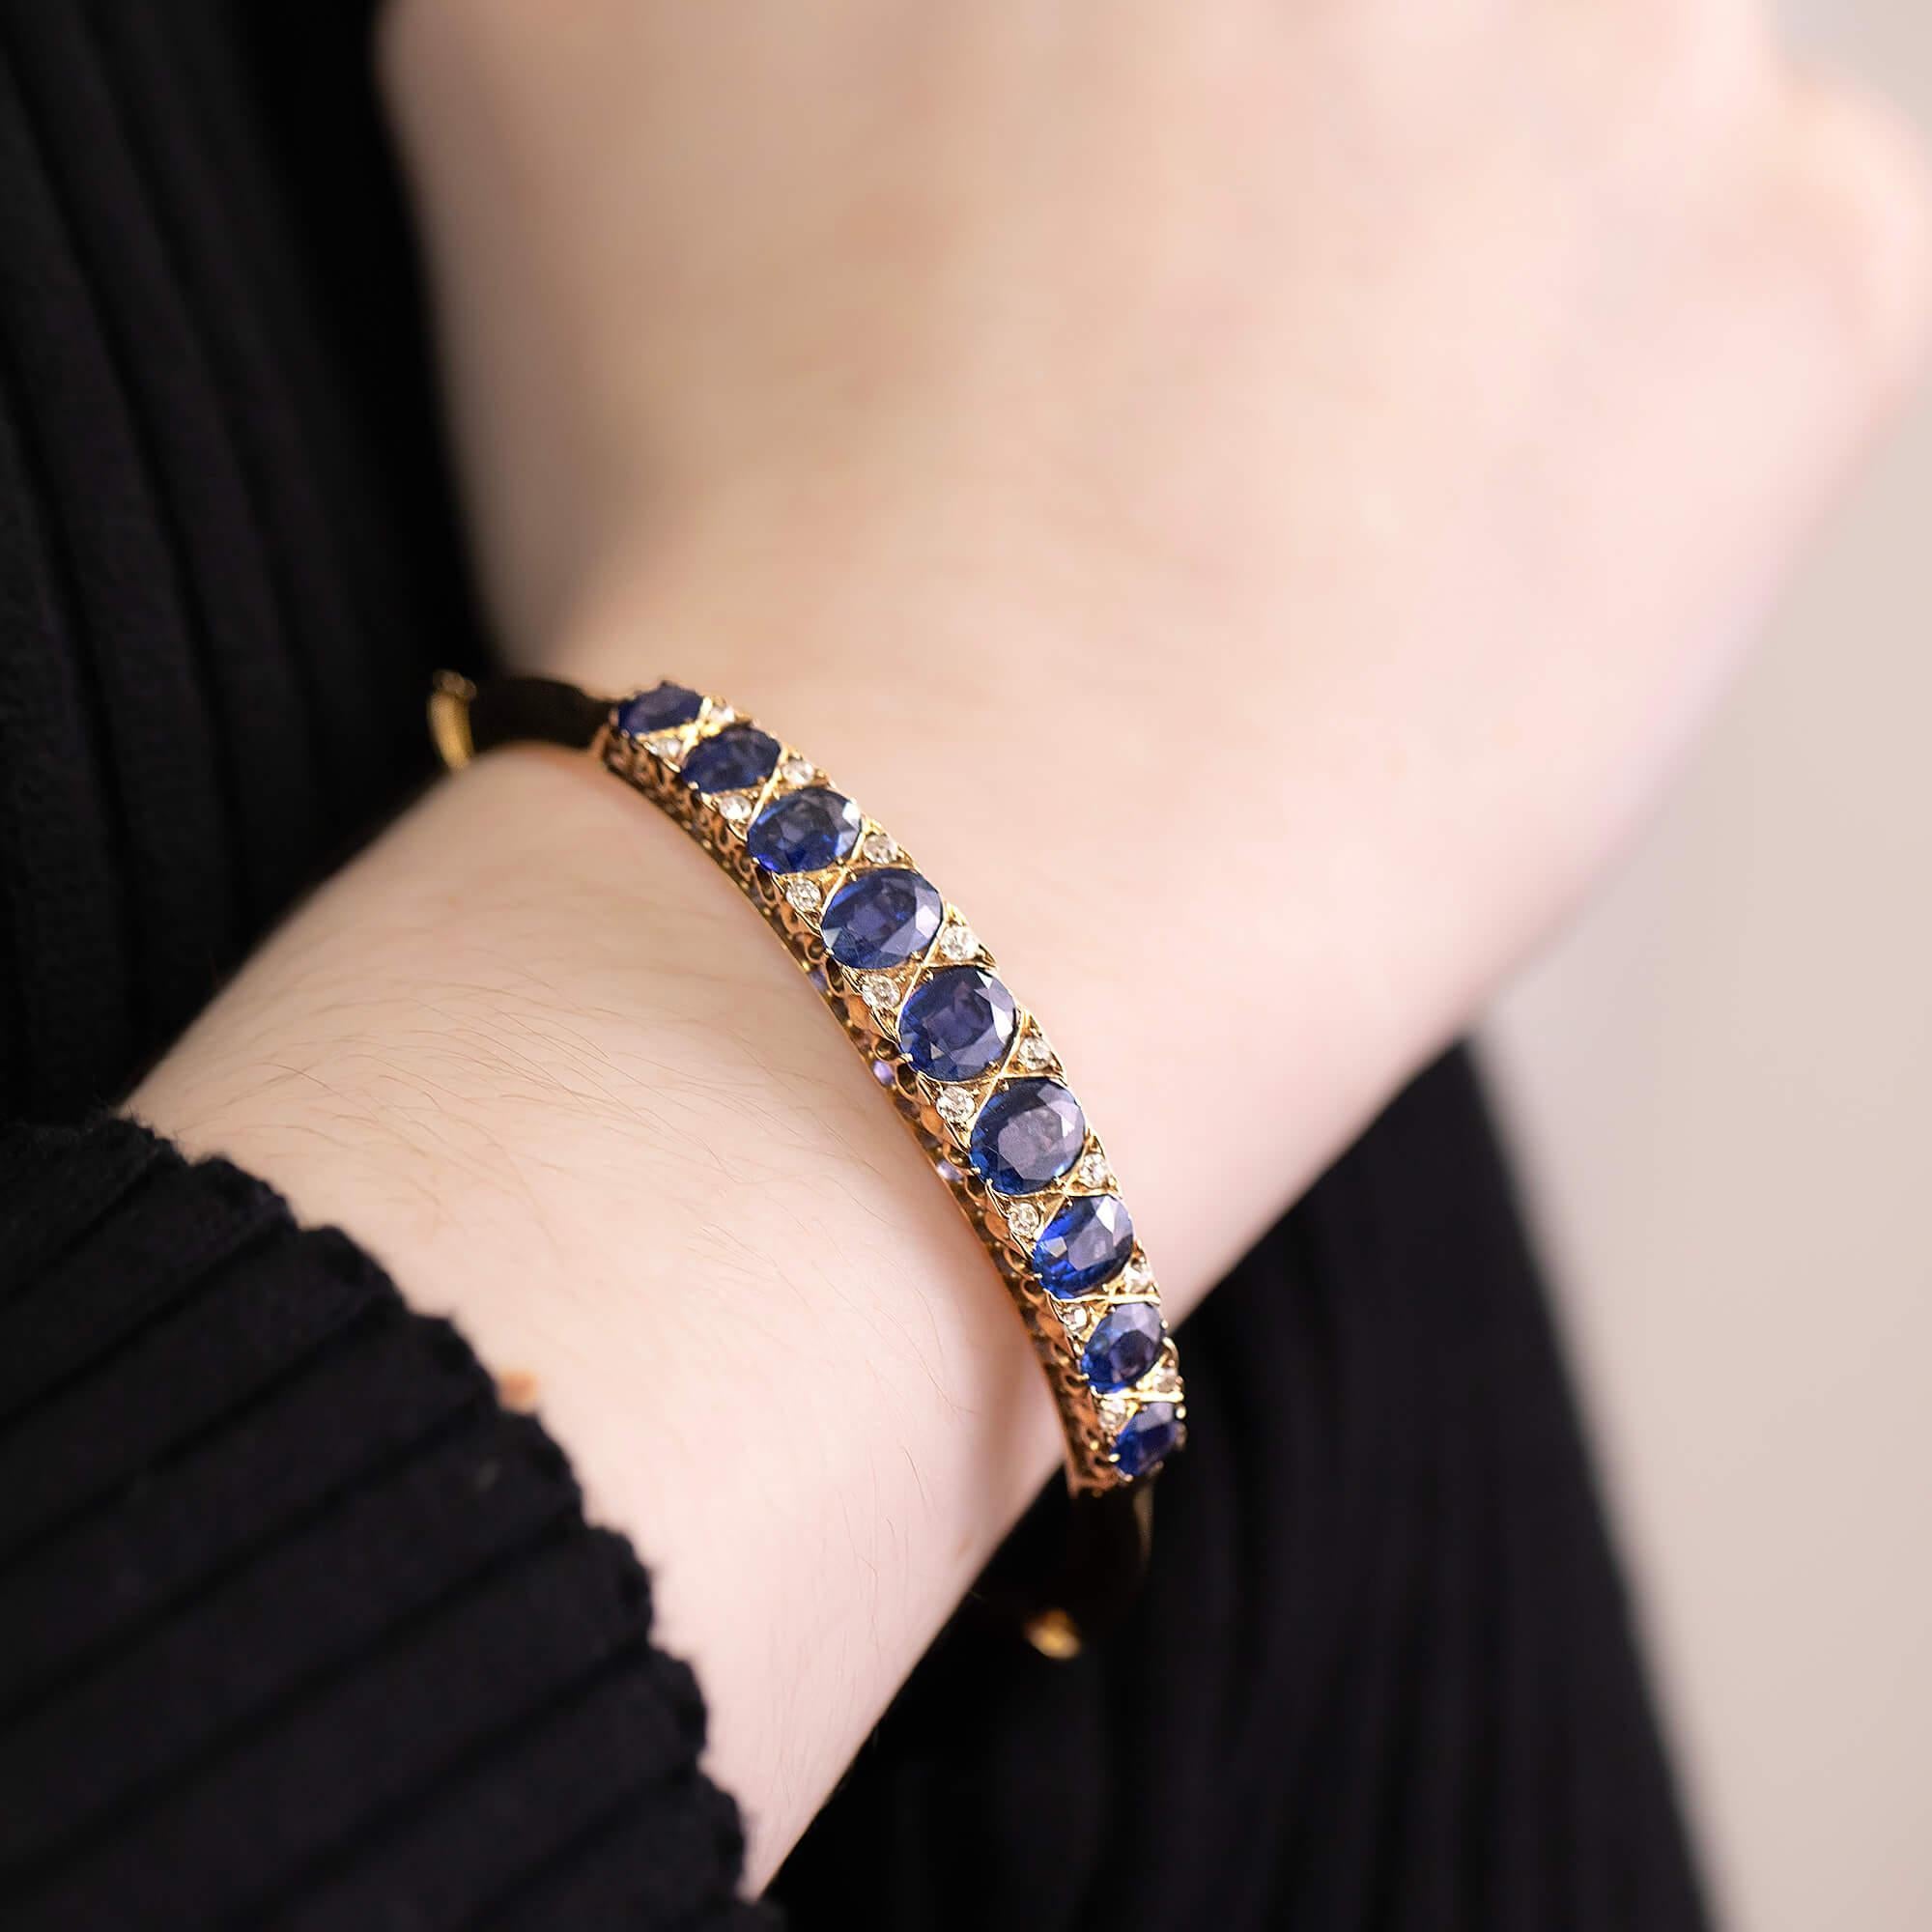 Bracelet à charnière en saphir et diamant de style édouardien, avec un beau travail de galerie et une chaîne de sécurité.

Pierre précieuse : Neuf saphirs de taille ovale, allant de (4,85 x 3,9 mm à 7,3 x 5,7 mm), d'une belle couleur bleu foncé,